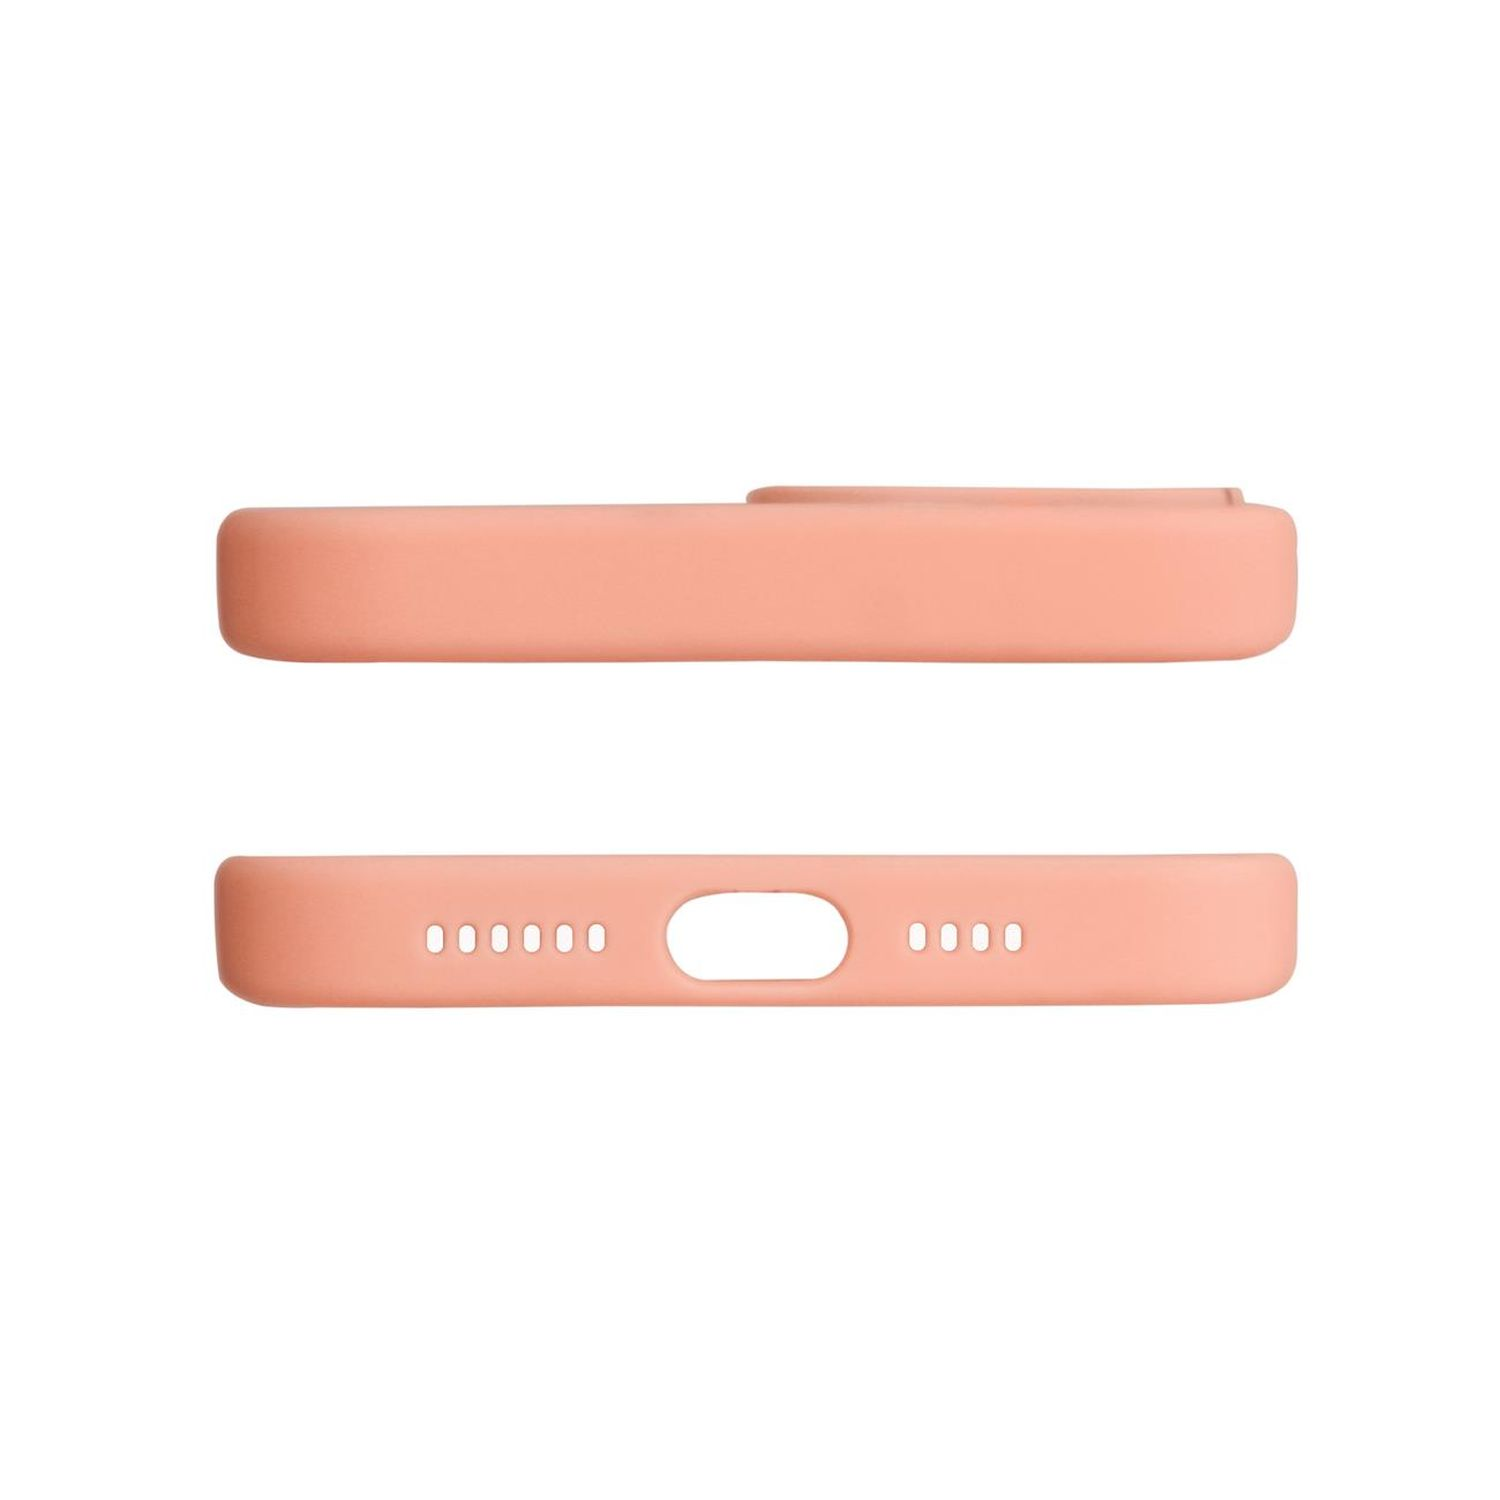 Cover mit Pro, Pink iPhone iPhone kompatibel Design Apple, Kameraschutz 13 \